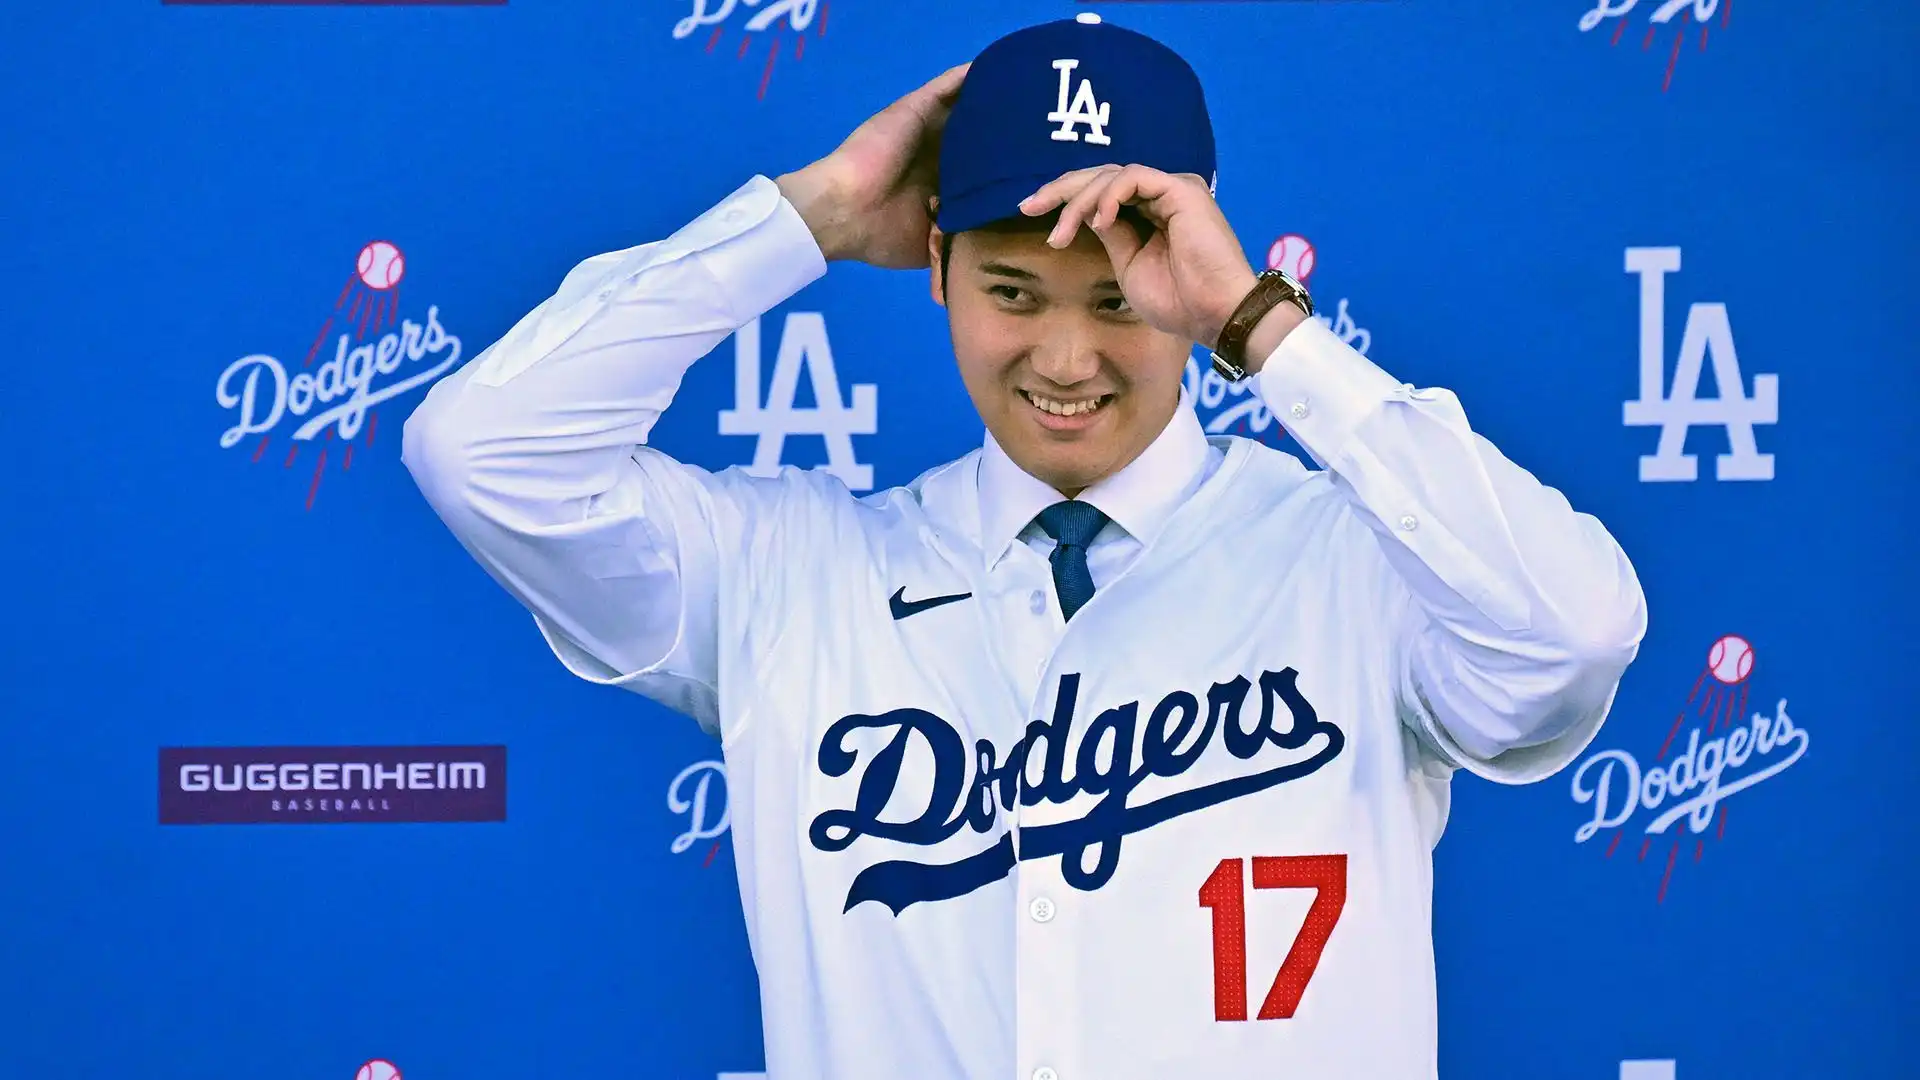 1 Shohei Ohtani (Los Angeles Dodgers): 70 milioni di dollari all'anno